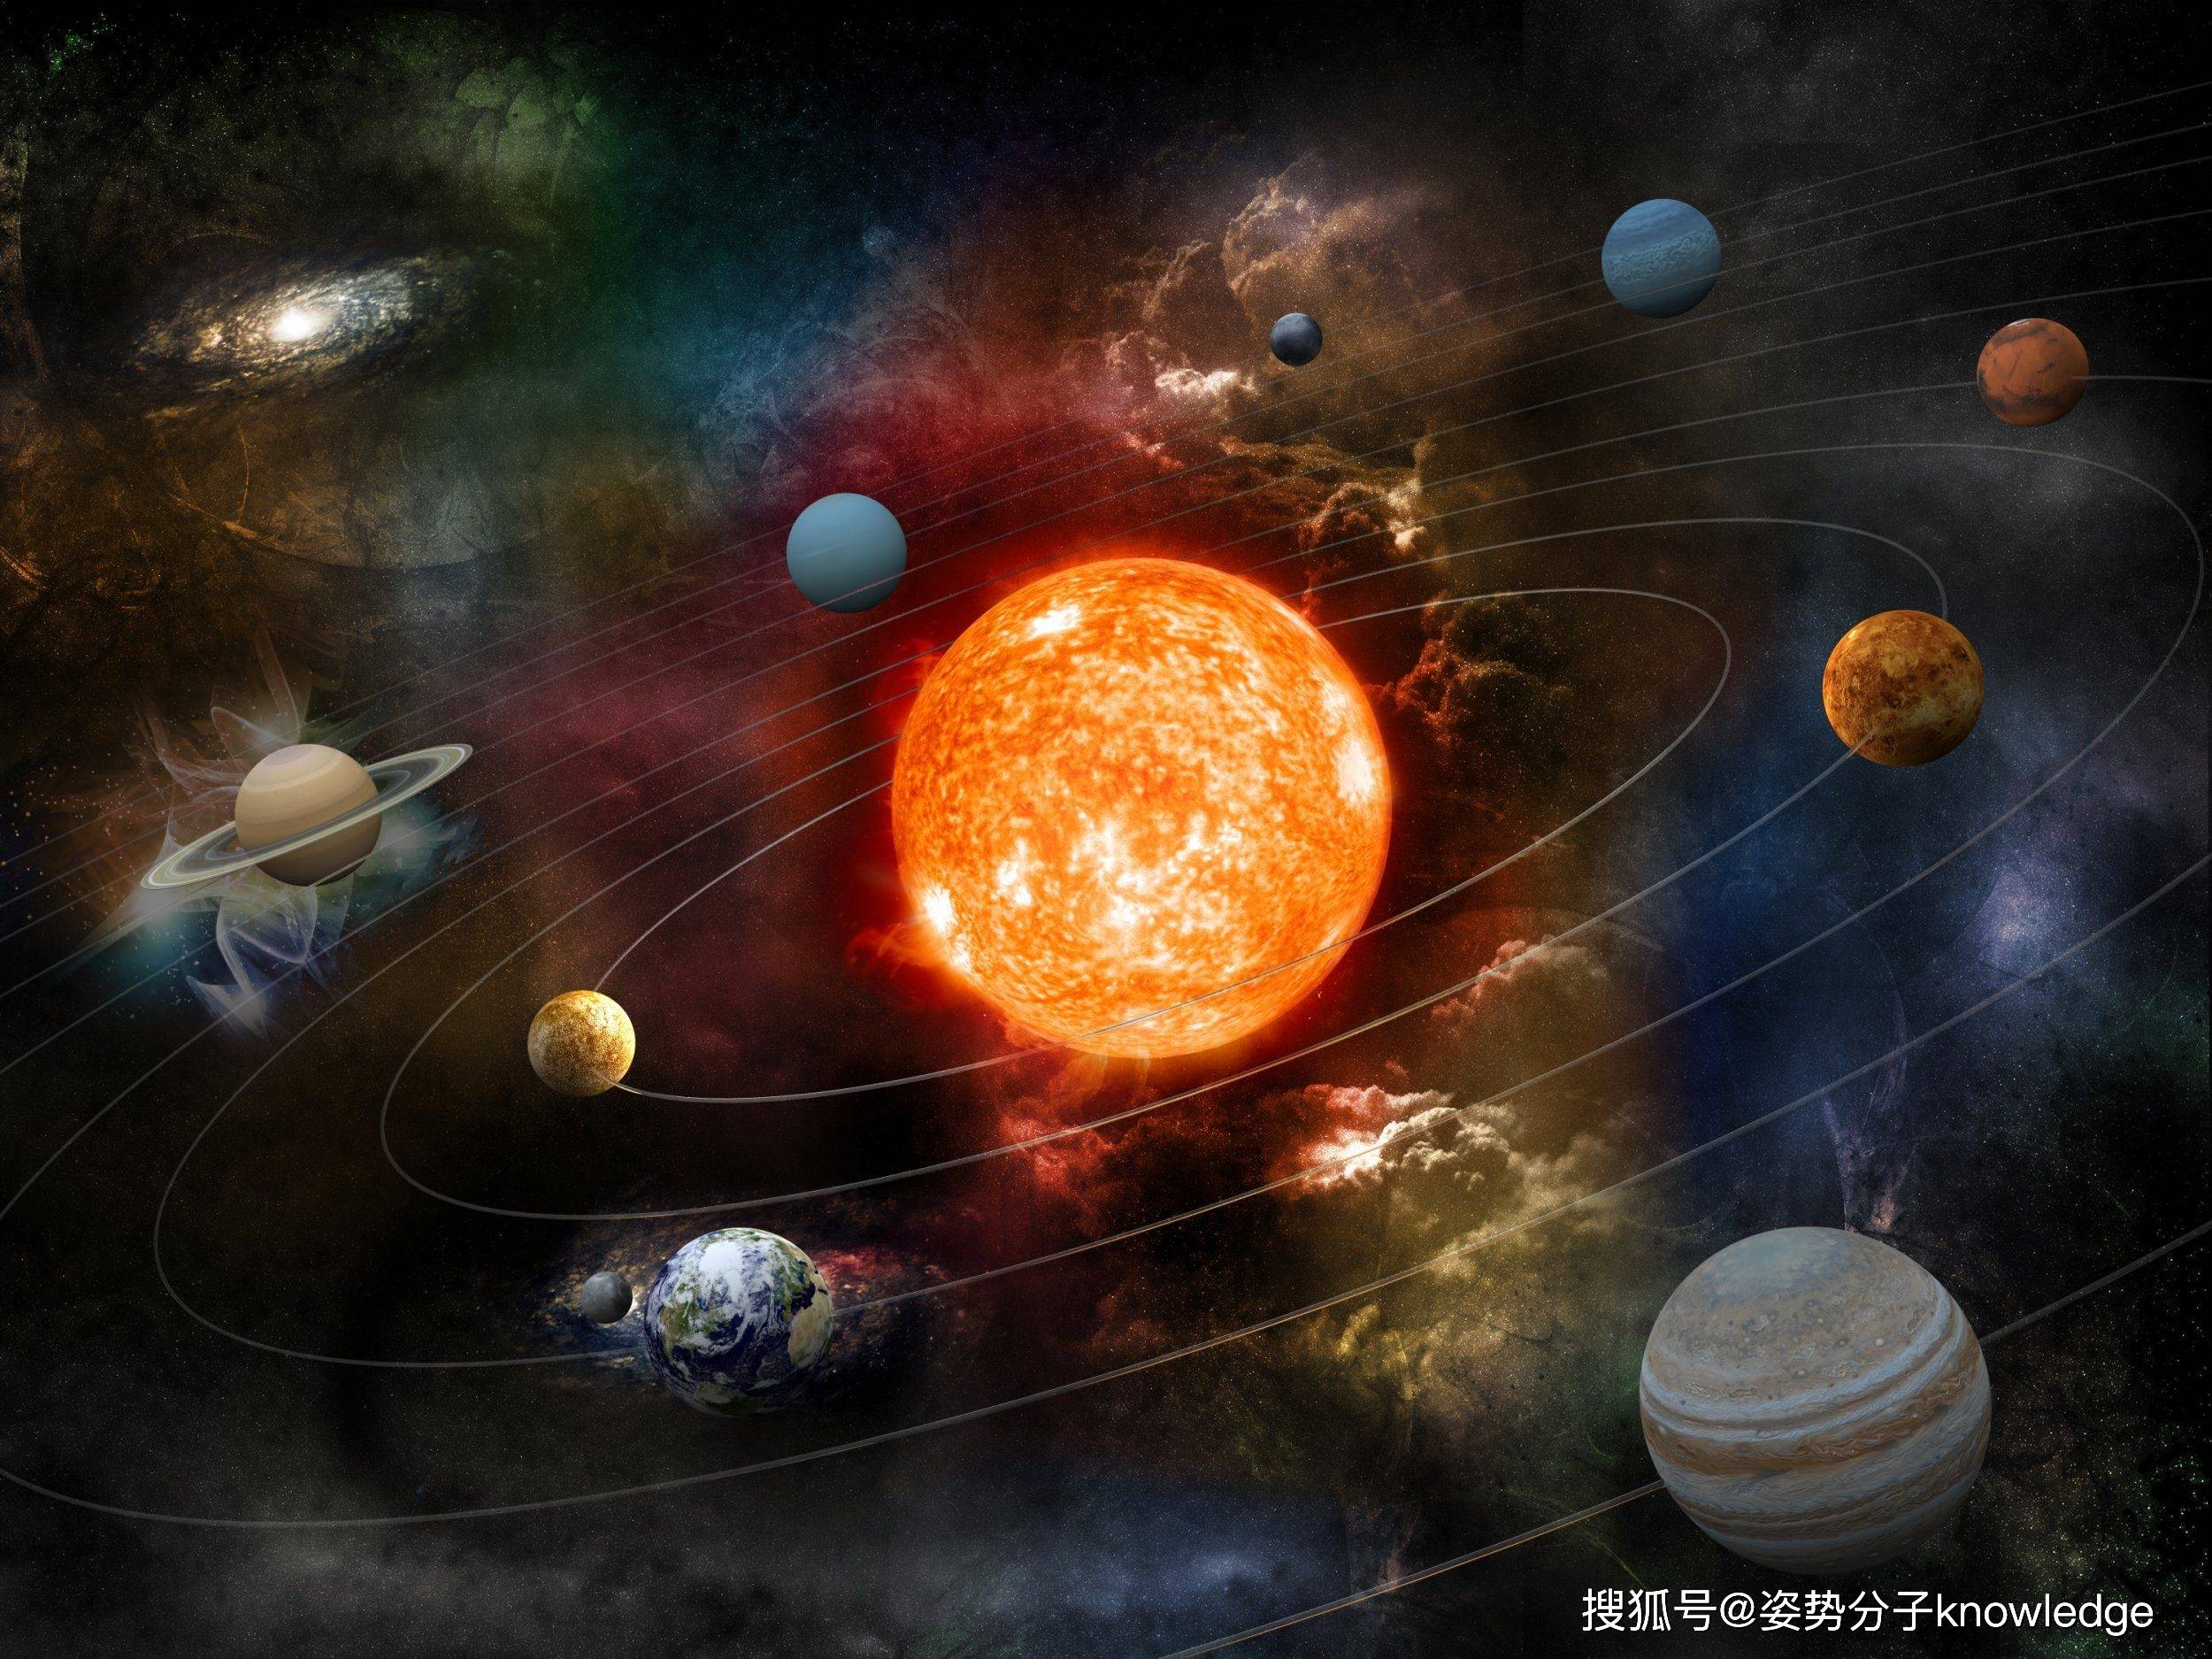 既然太阳系是一个平面,如果航天器垂直飞,不就突破太阳系了?